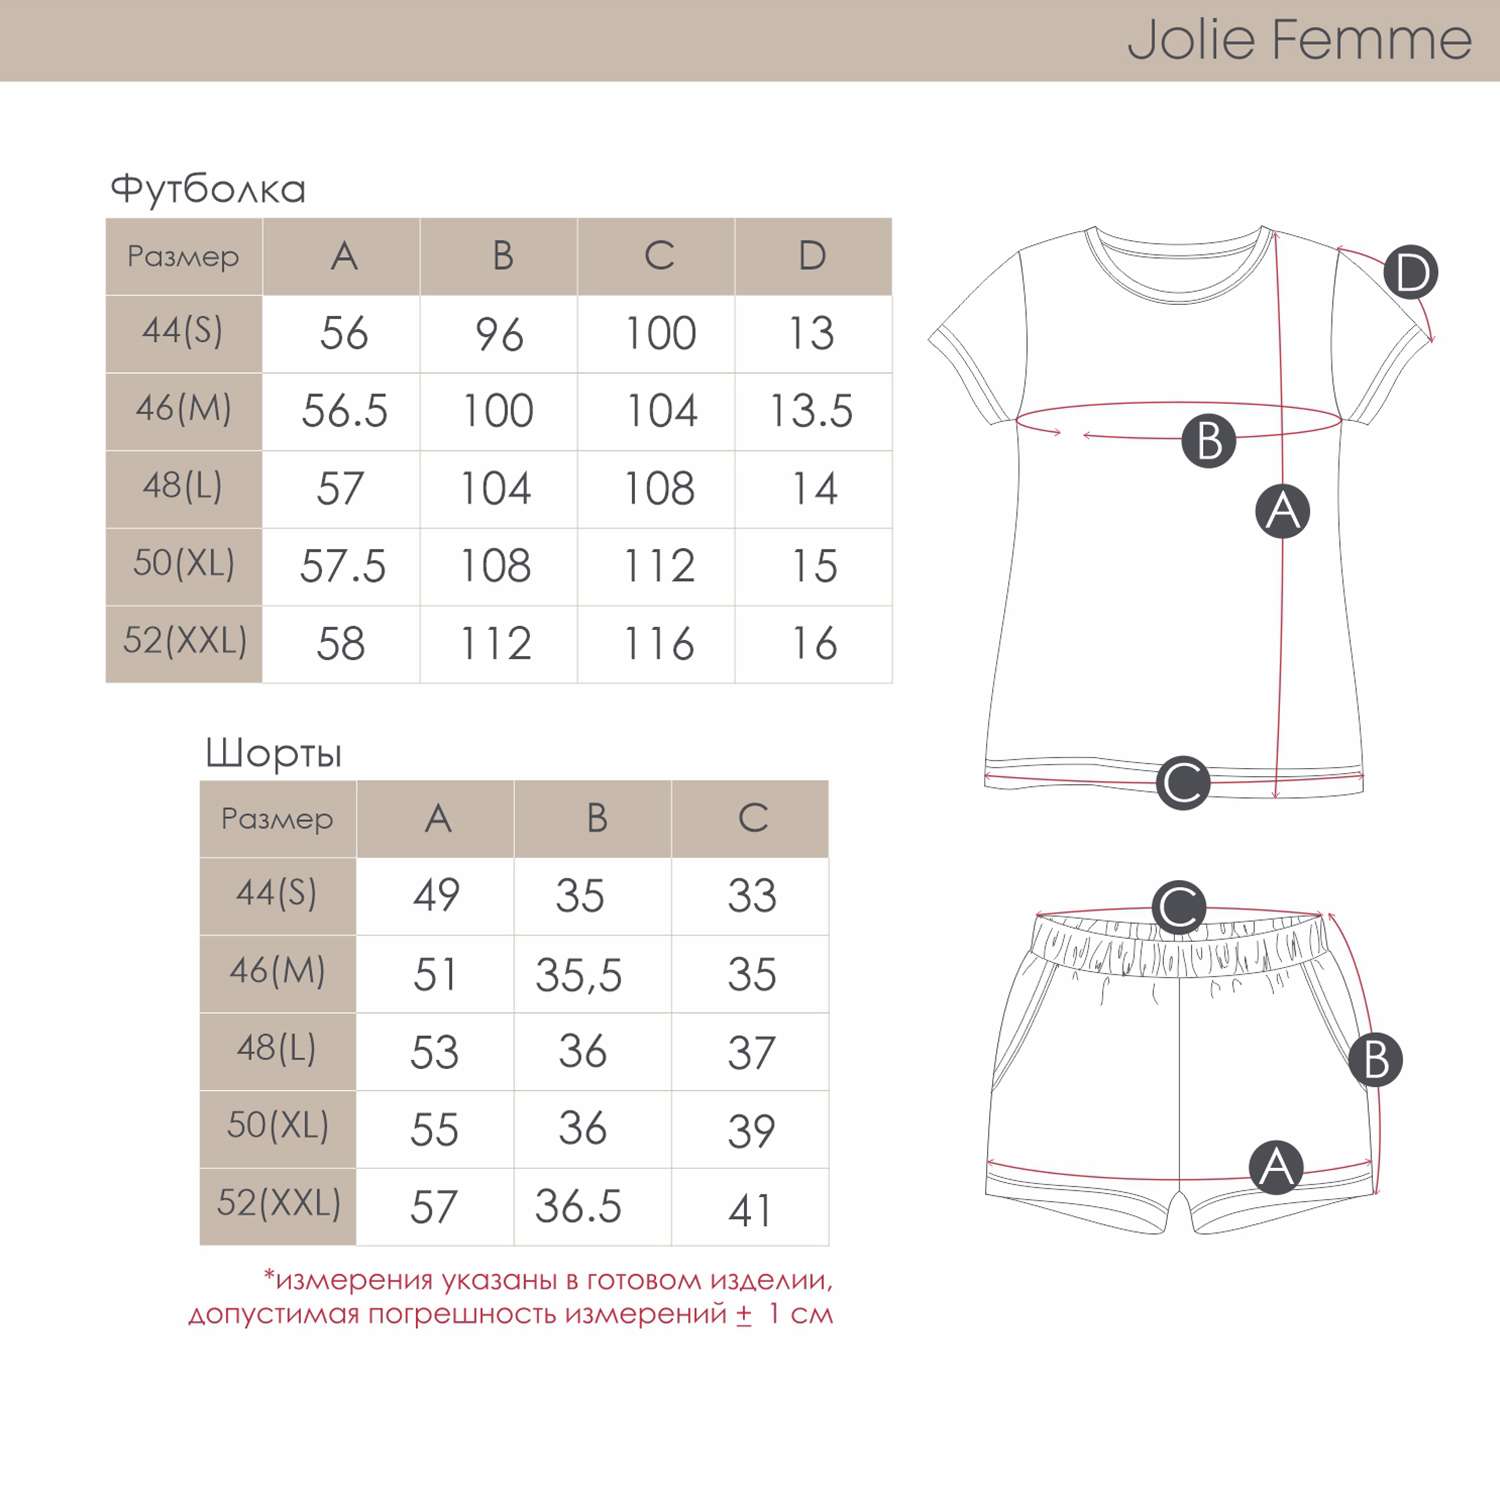 Пижама Jolie Femme J065/034/leo - фото 5